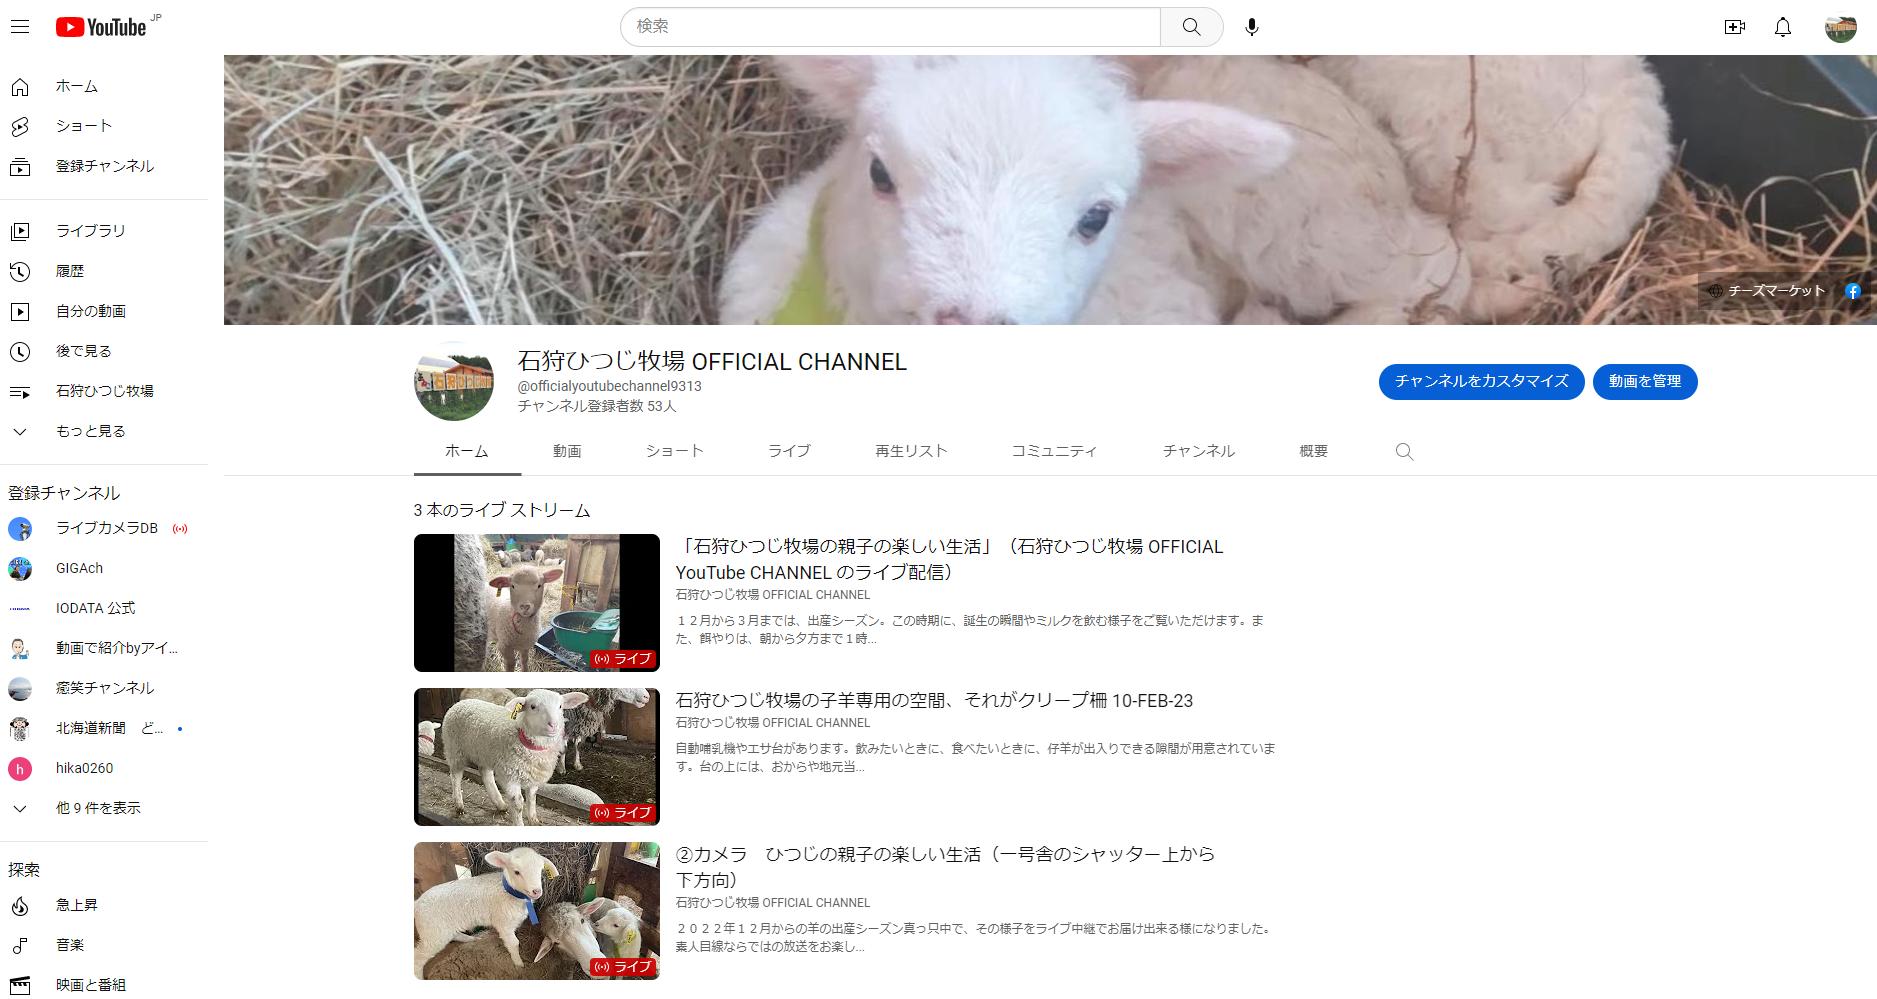 石狩ひつじ牧場のYouTubeチャンネル"